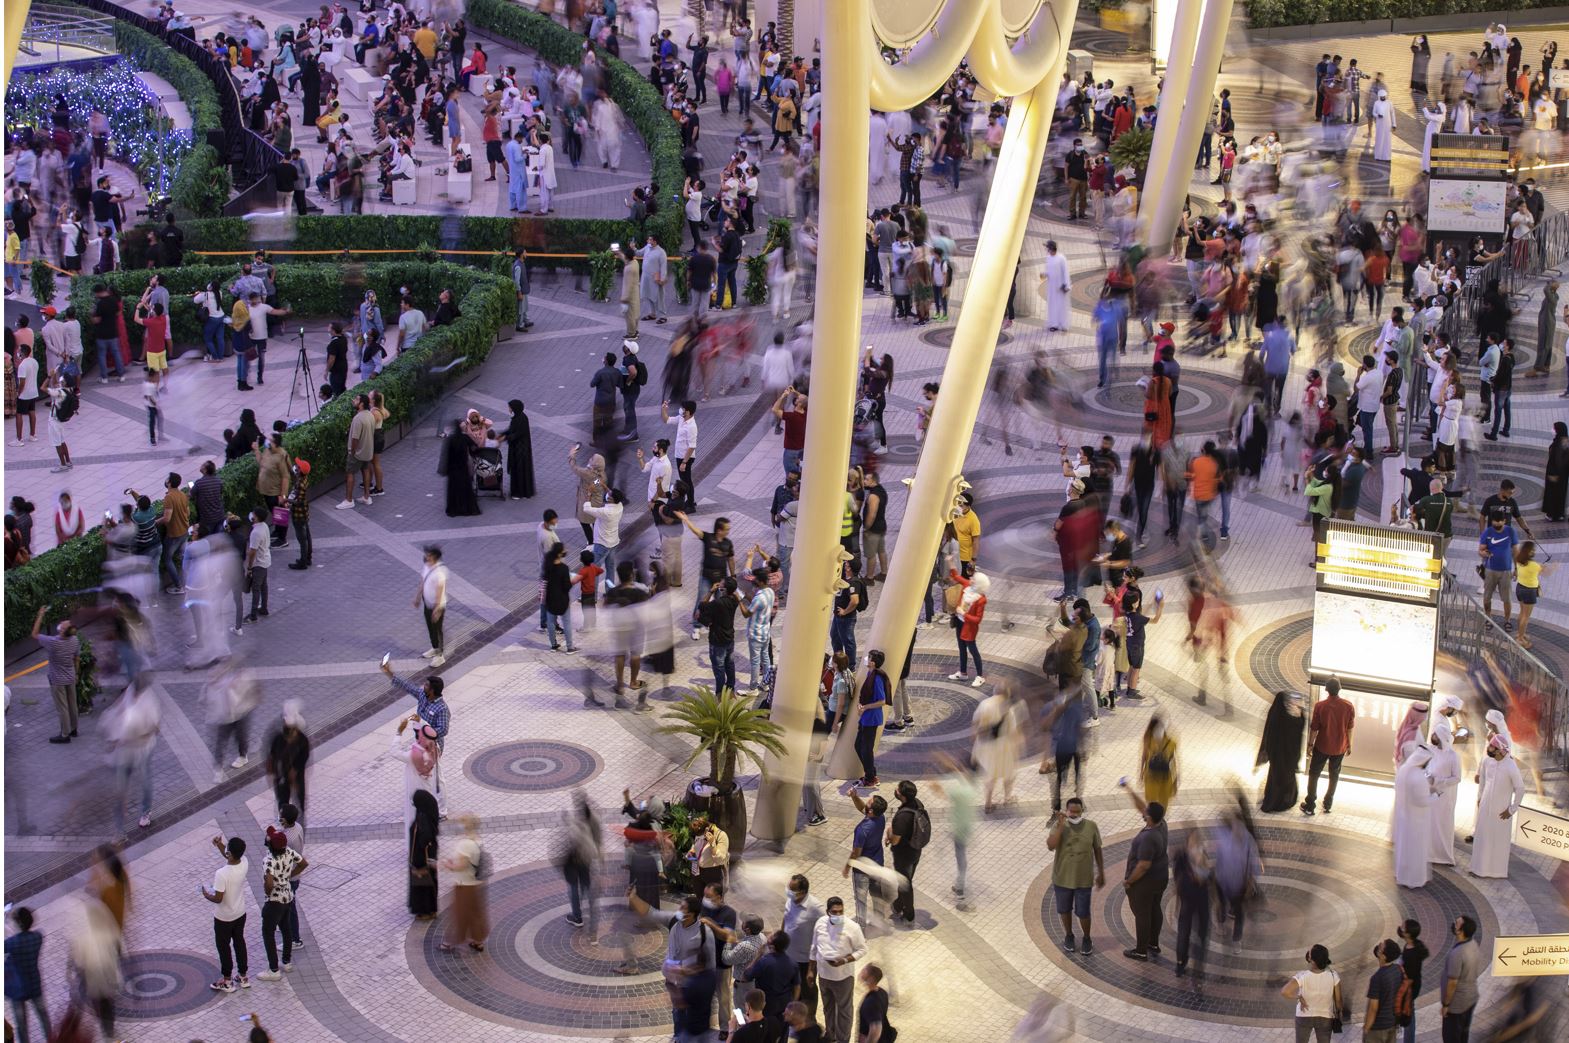 Al Wasl Plaza at Expo 2020 Dubai